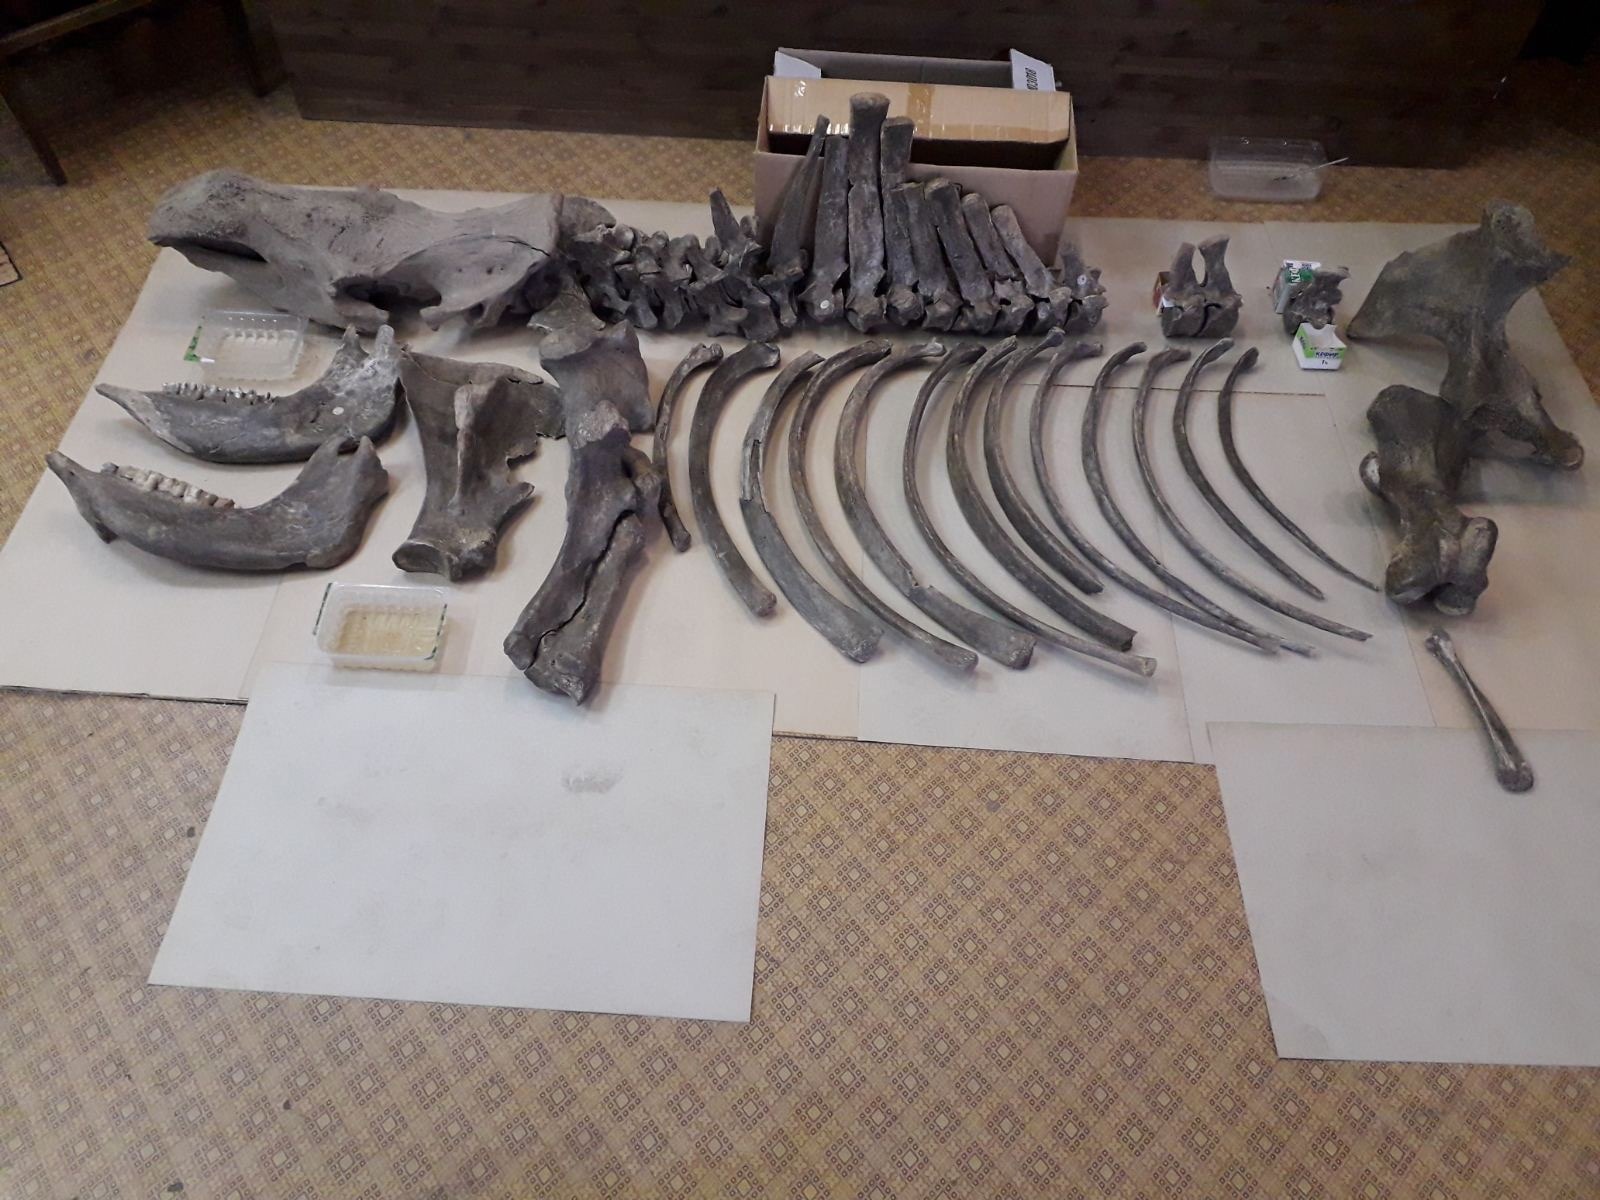 Находка из ледникового периода: в Челябинске покажут скелет древнего носорога